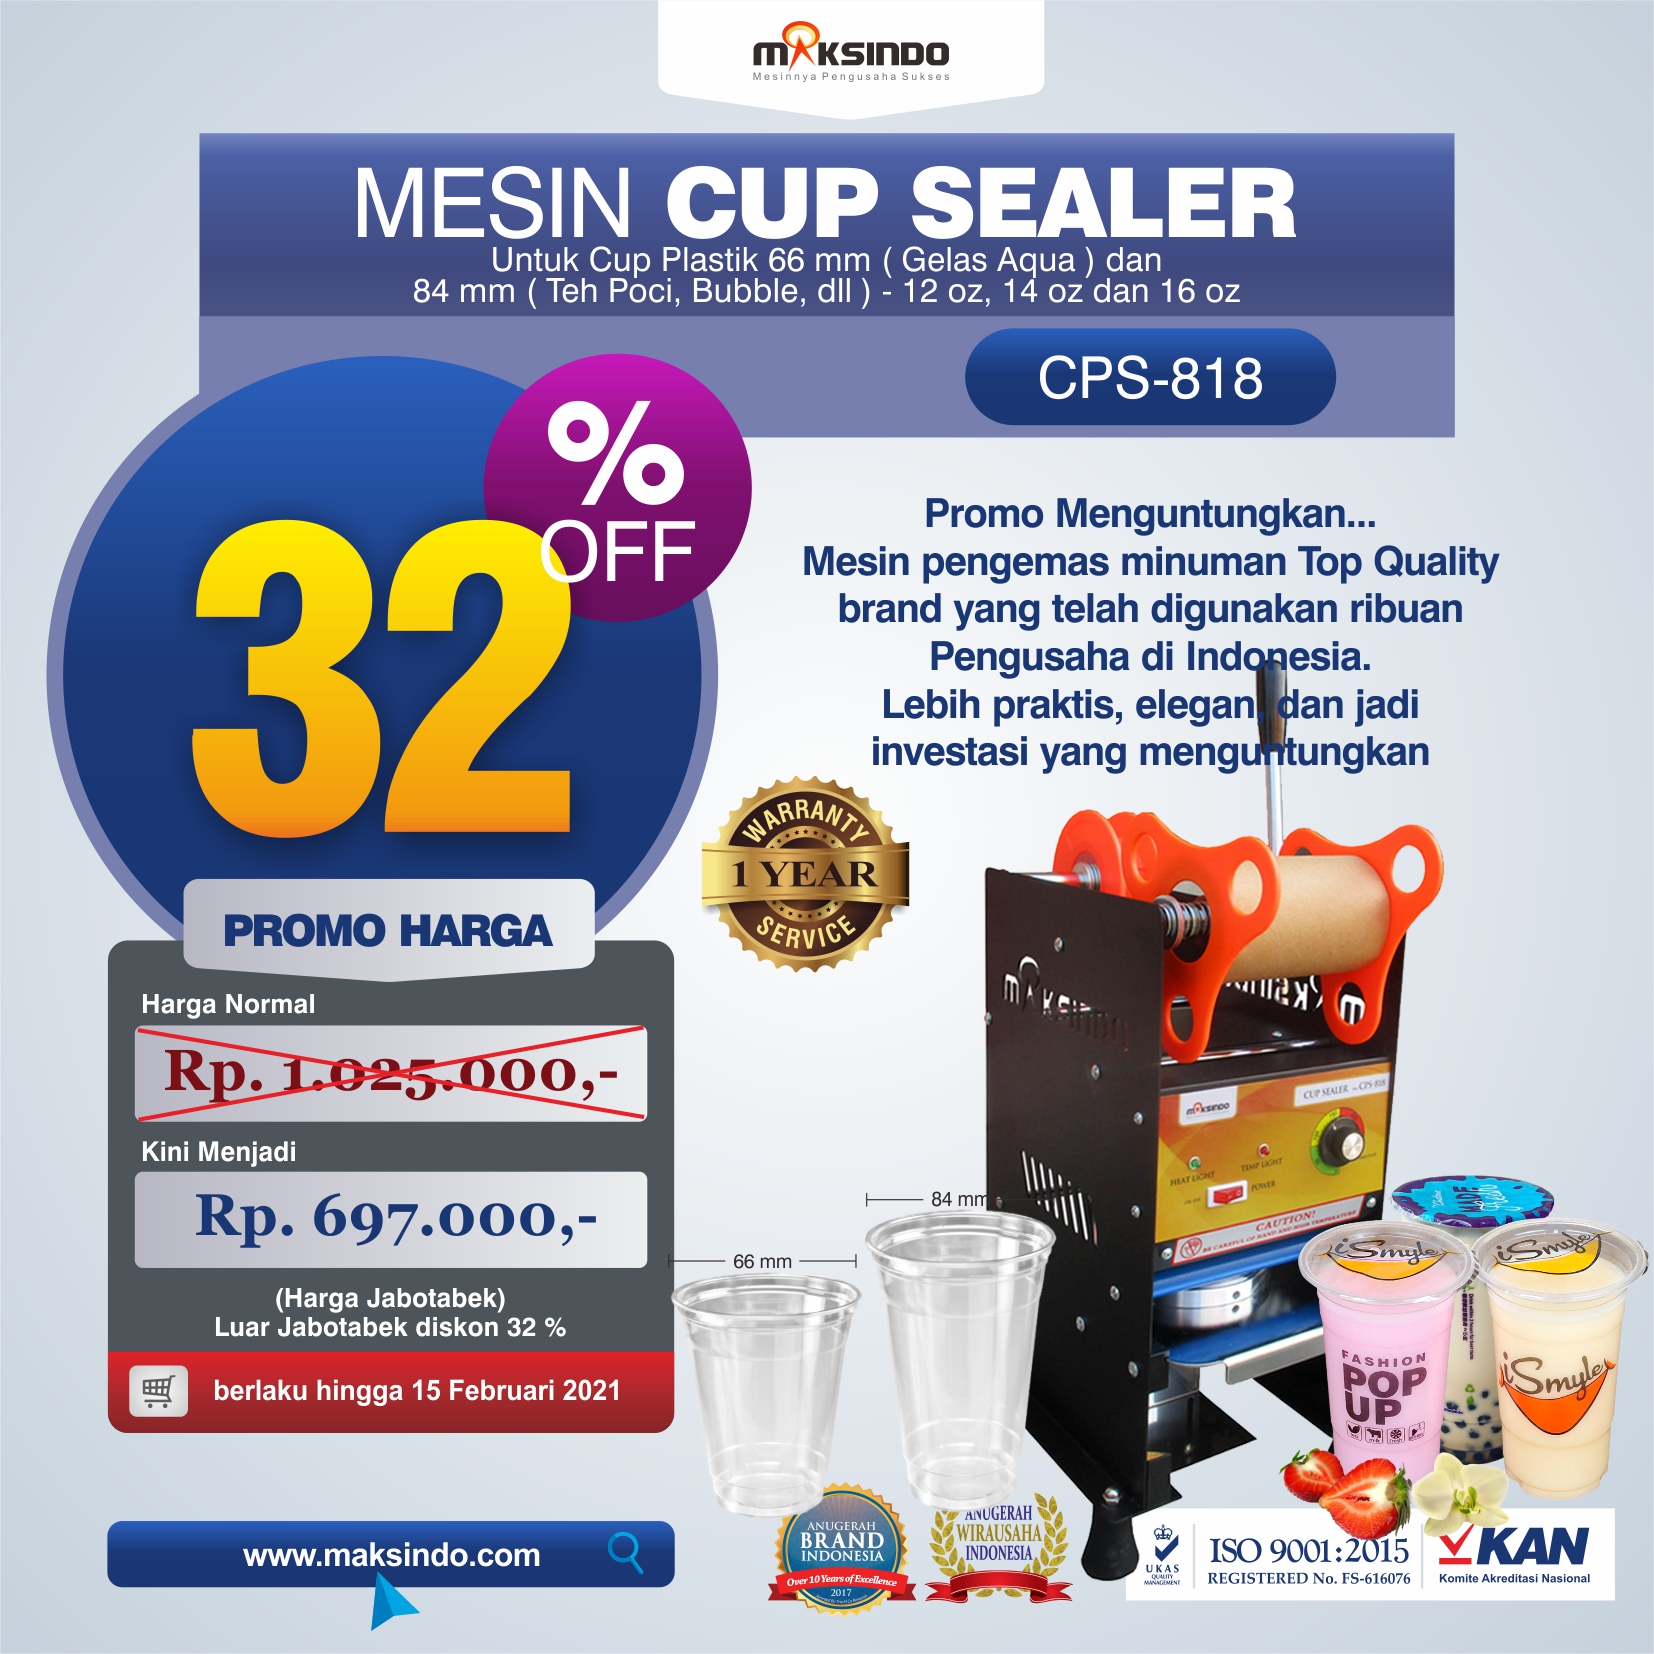 Jual Mesin Cup Sealer Manual CPS-818 di Solo